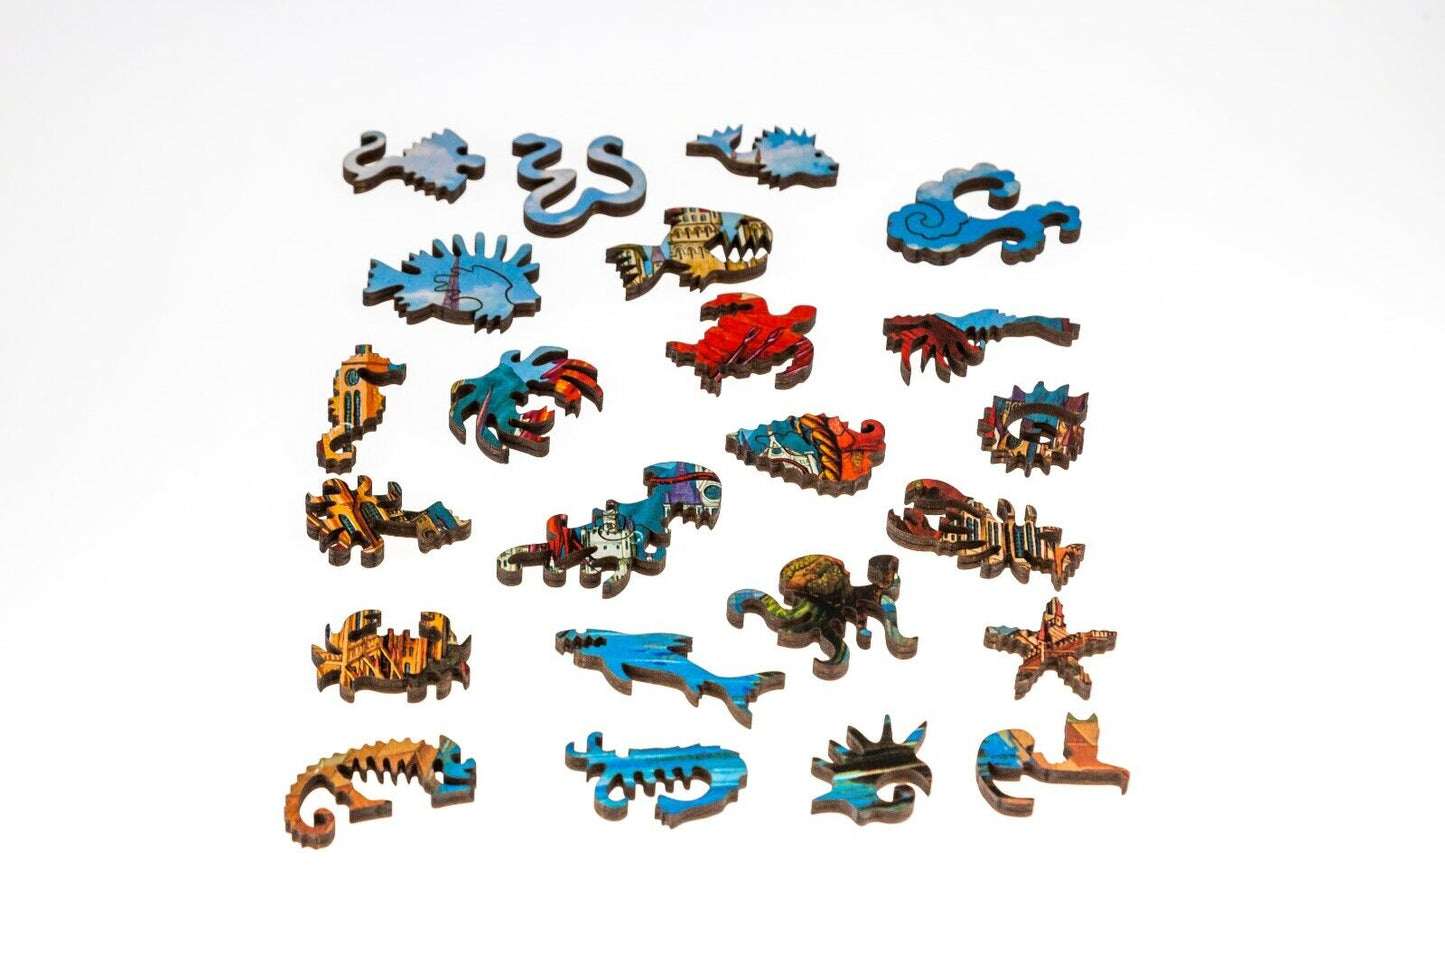 Davici - Unique Wooden Jigsaw Puzzle - 130 pieces - Red Shrimp